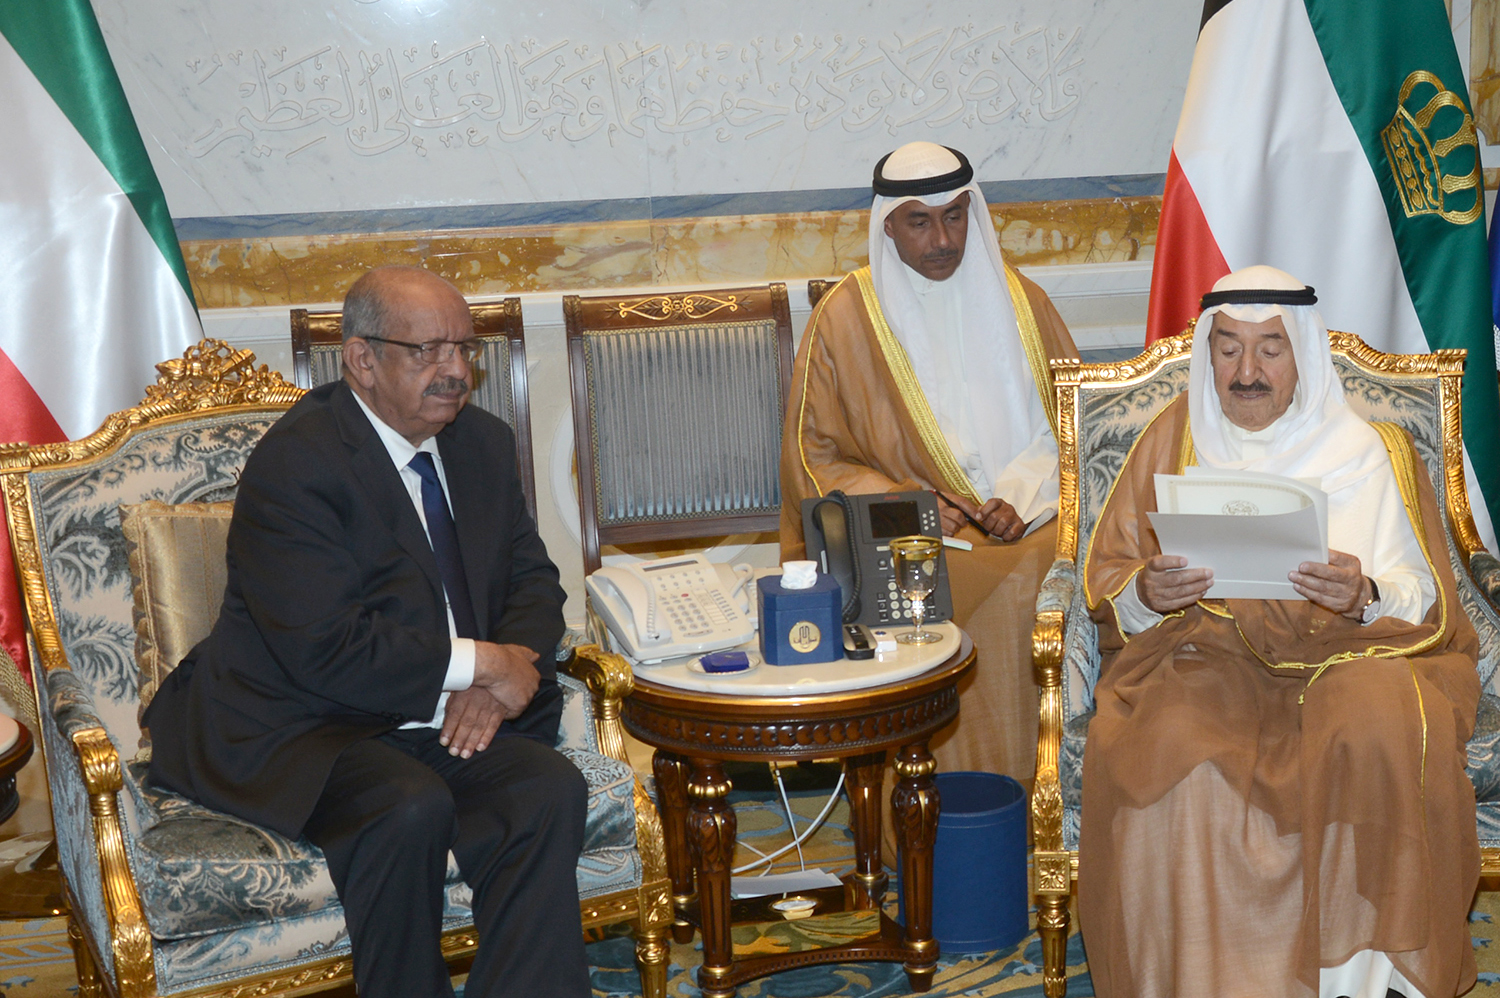 His Highness the Amir Sheikh Sabah Al-Ahmad Al-Jaber Al-Sabah received Algerian Foreign Minister Abdulqader Musahel